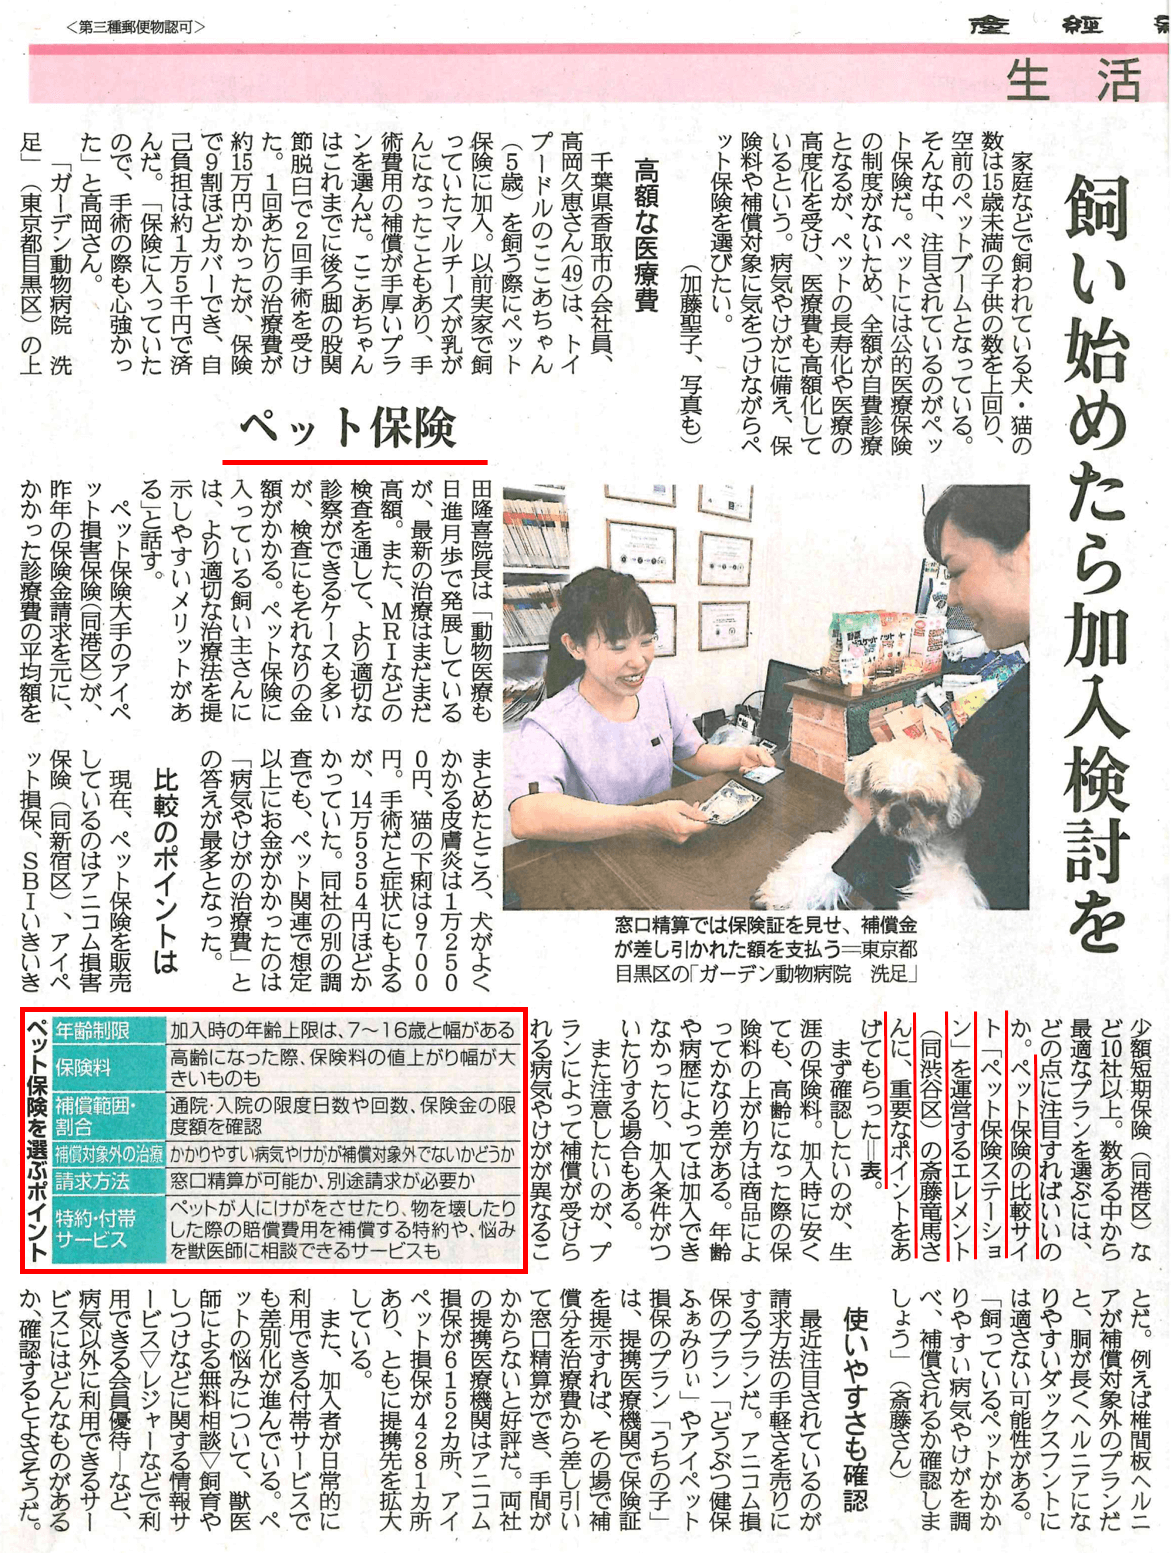 5月22日産経新聞ペット保険